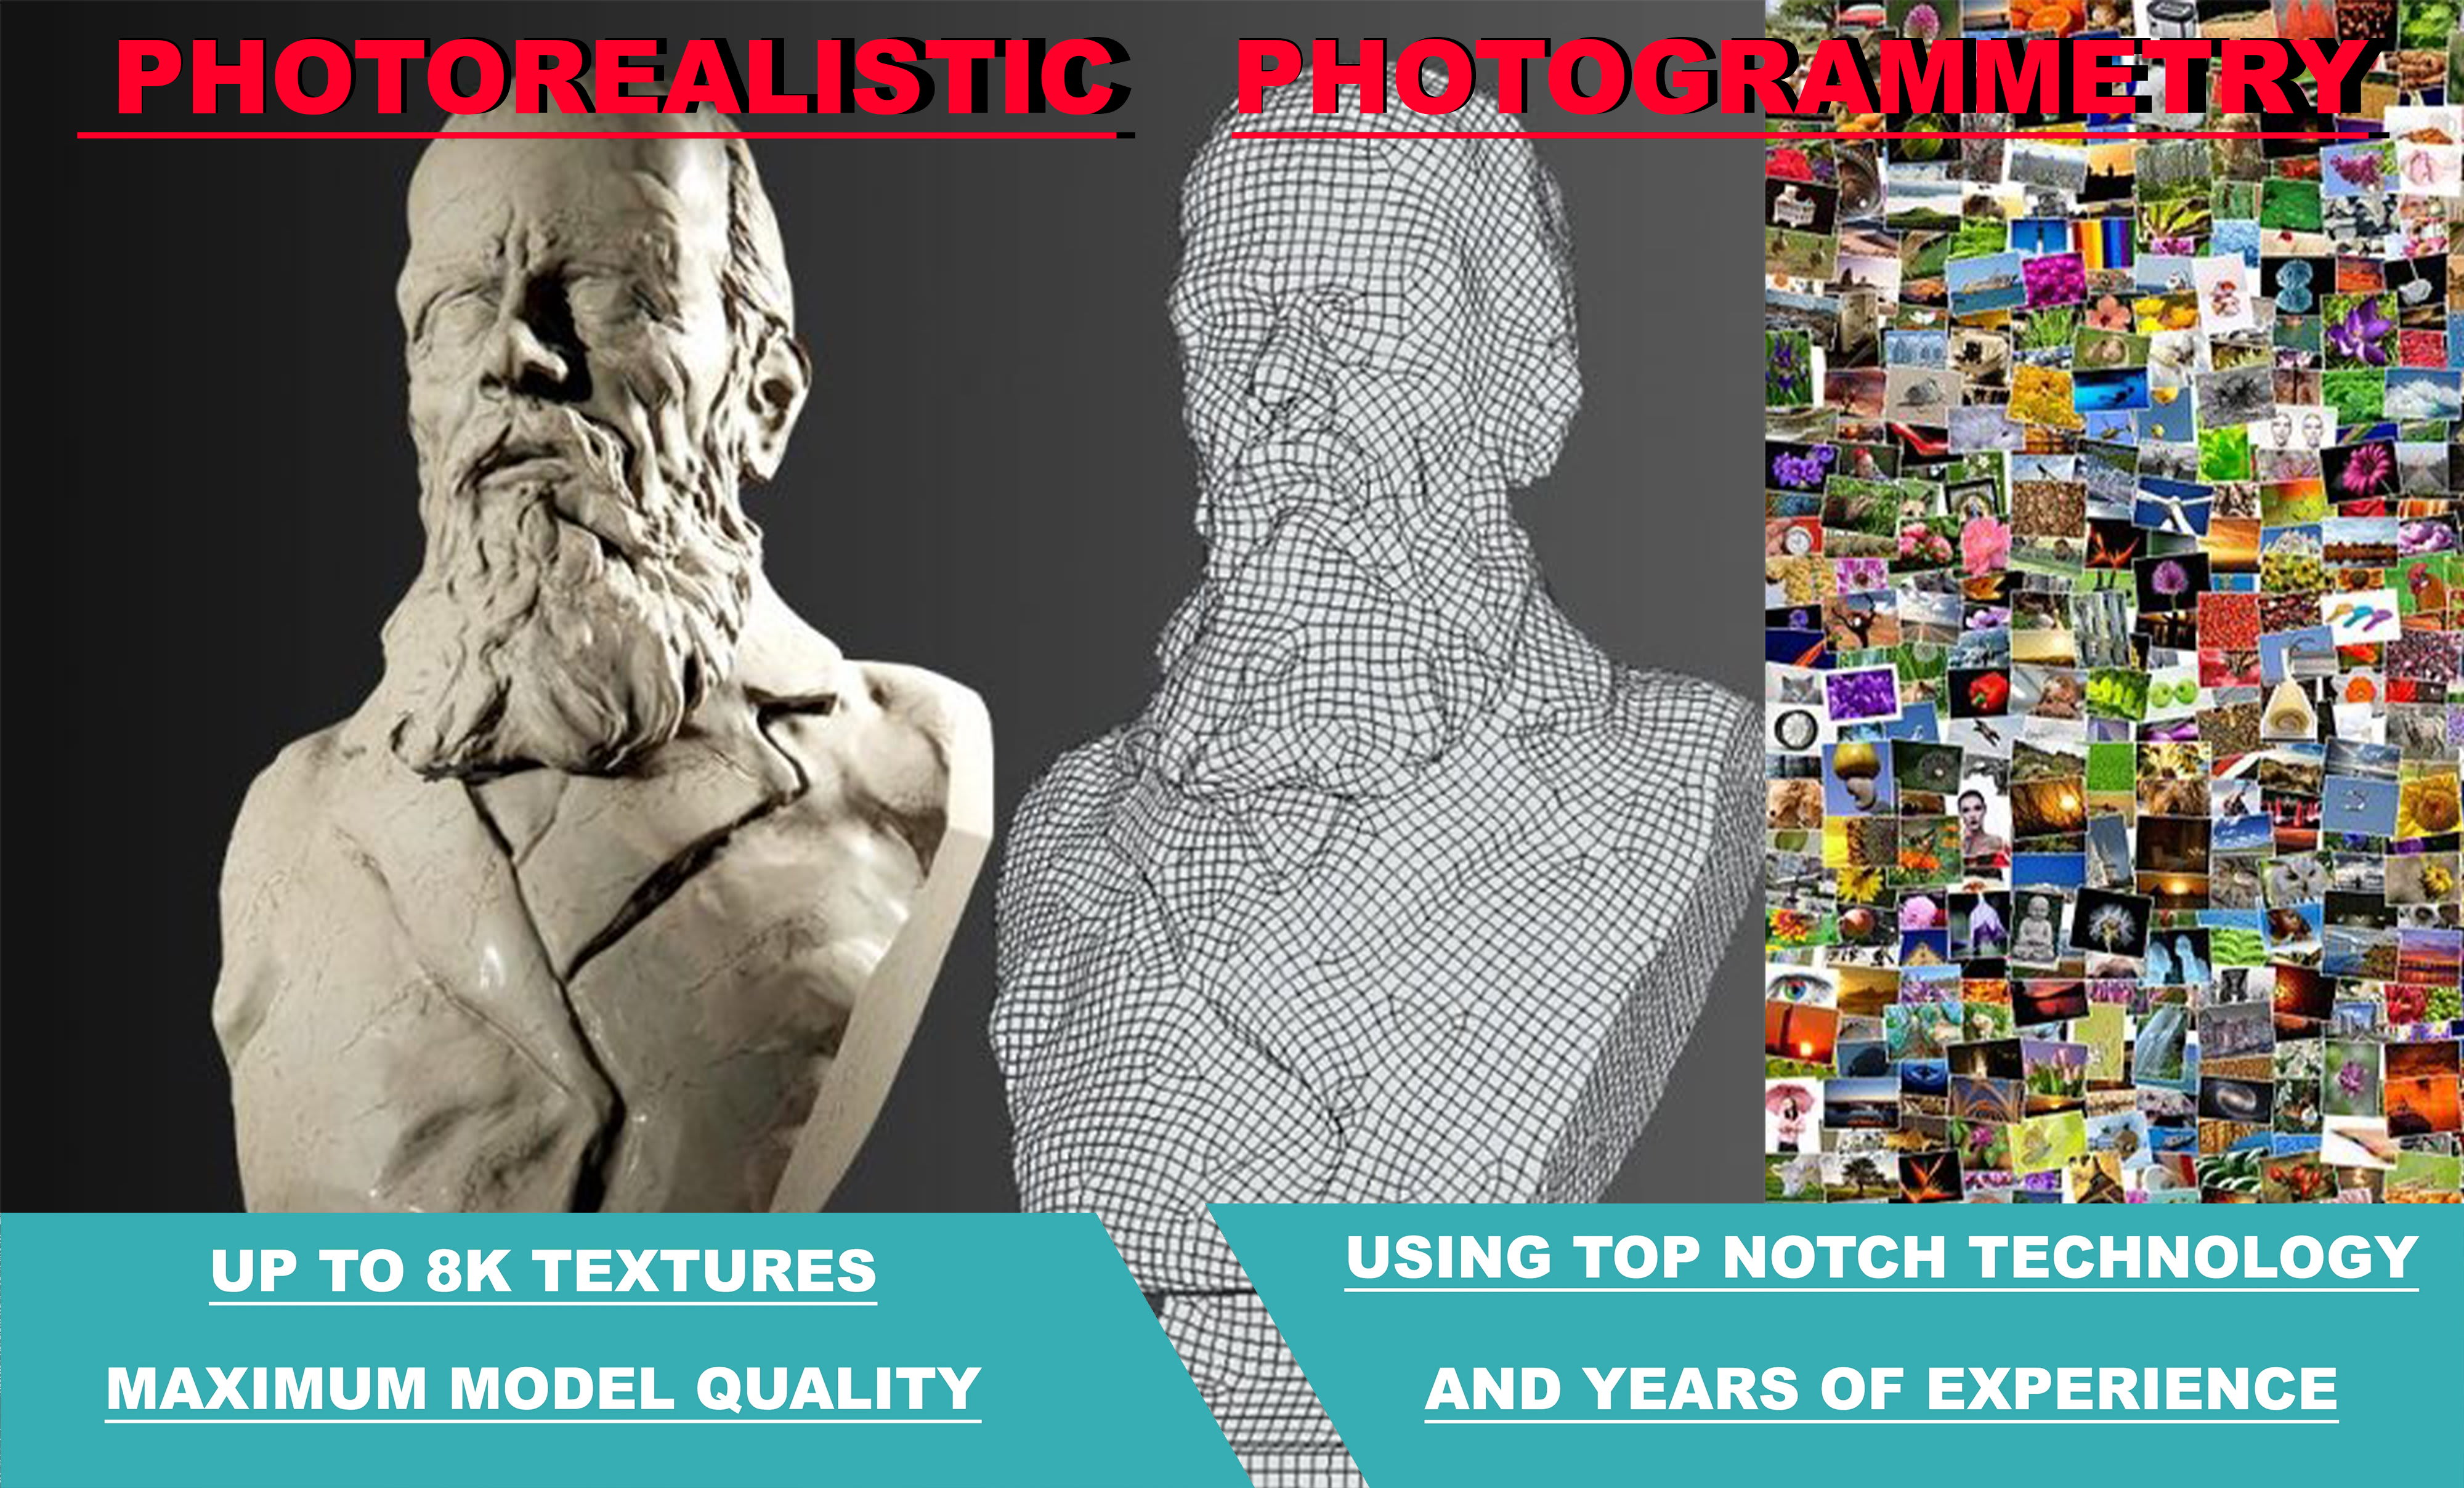 Erstellen Sie mithilfe der Photogrammetrie 3D-Objekte aus Ihren Bildern